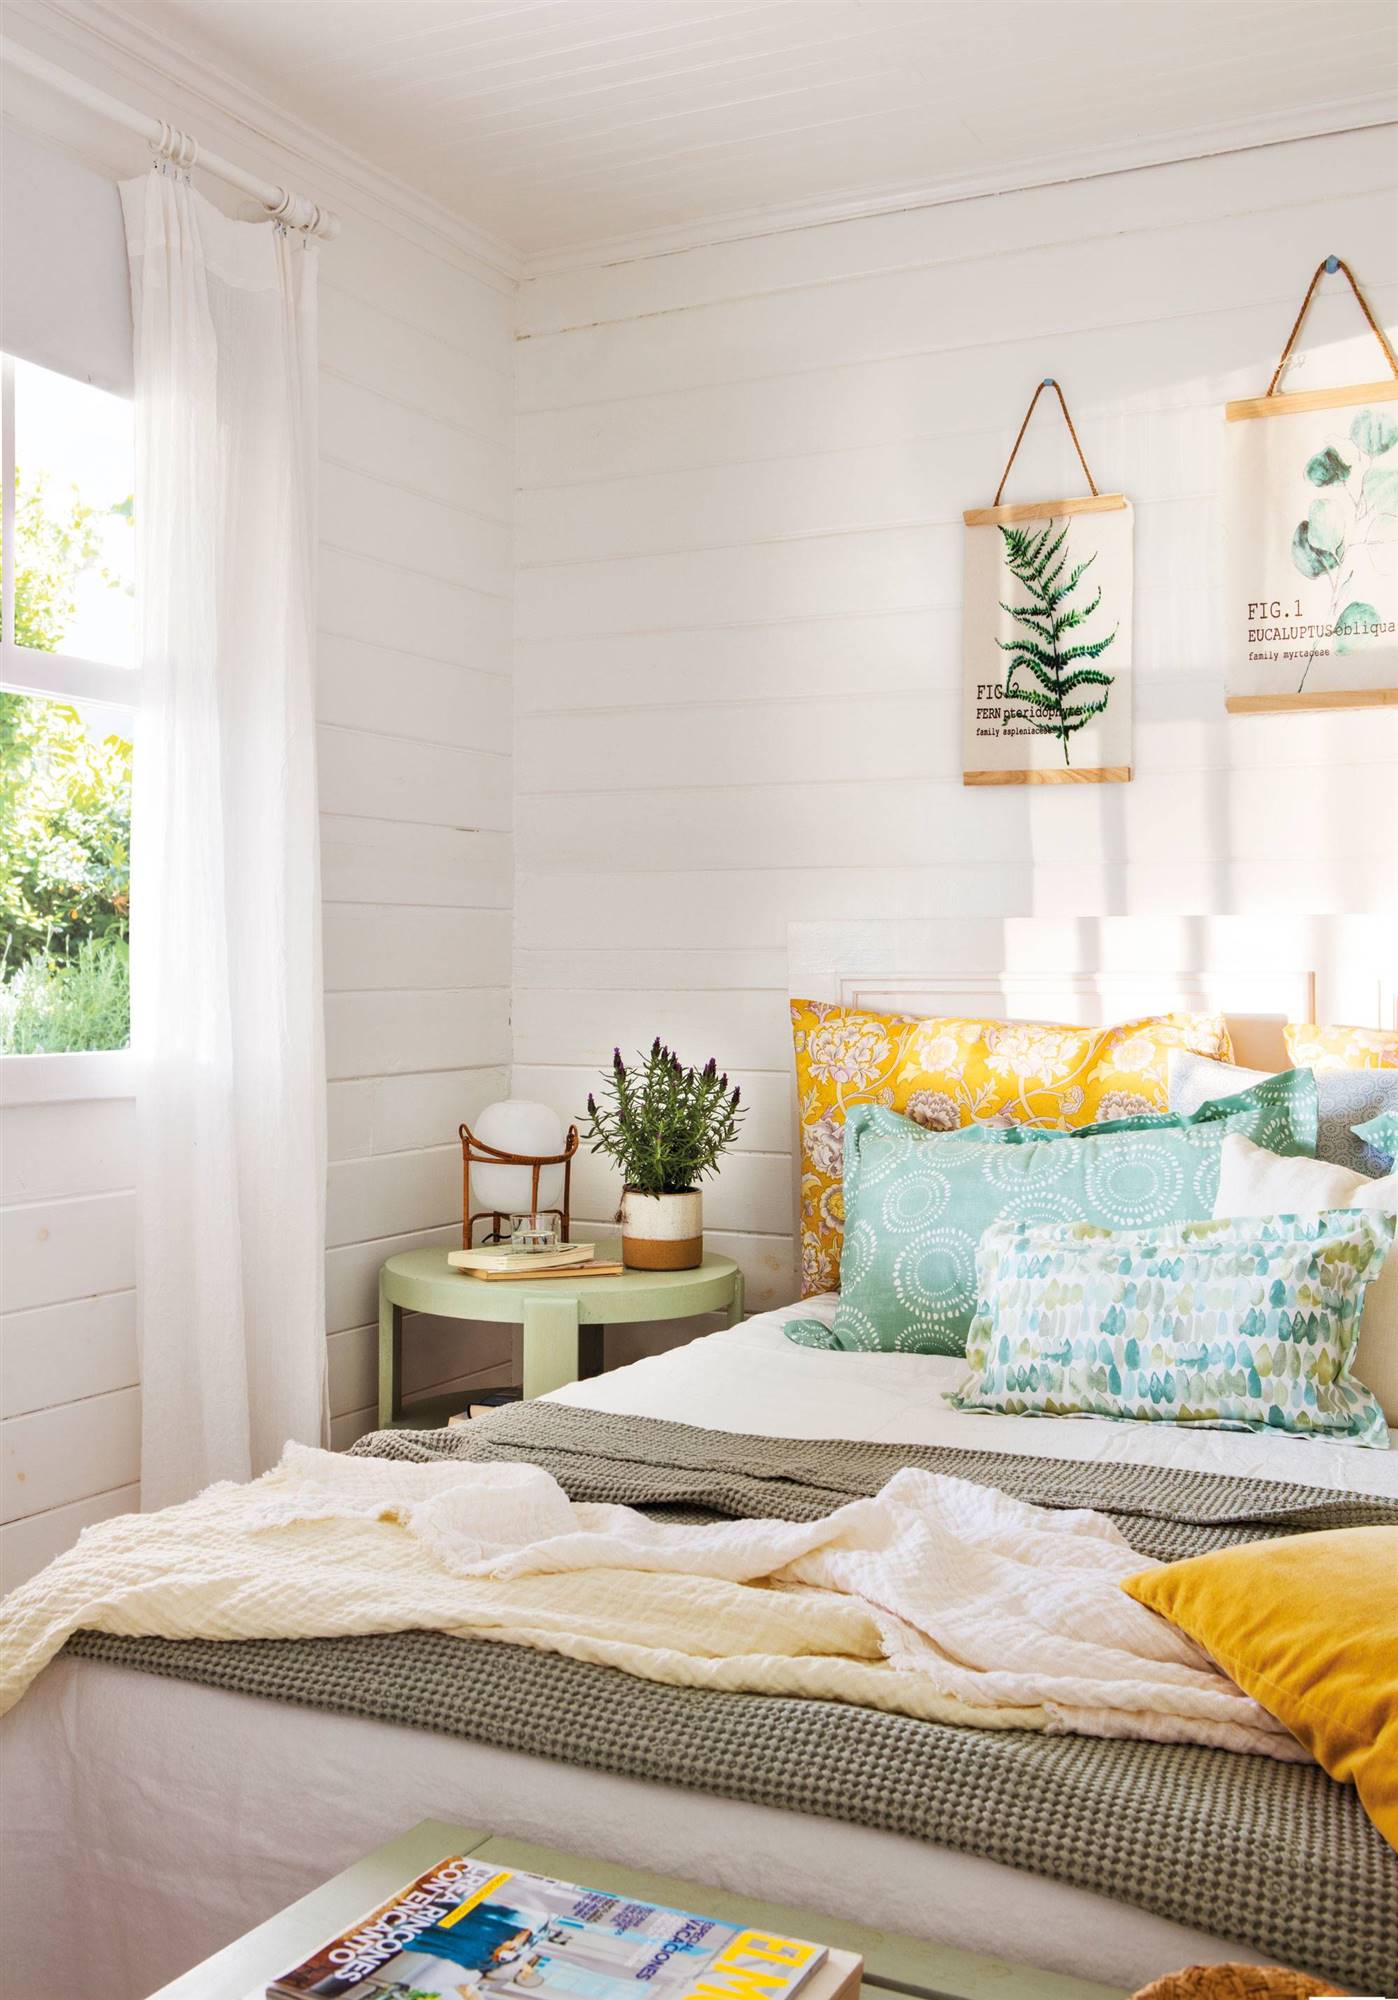 Dormitorio rústico con lamas de madera blanca en las paredes y ropa de cama en tonos verdes y amarillos